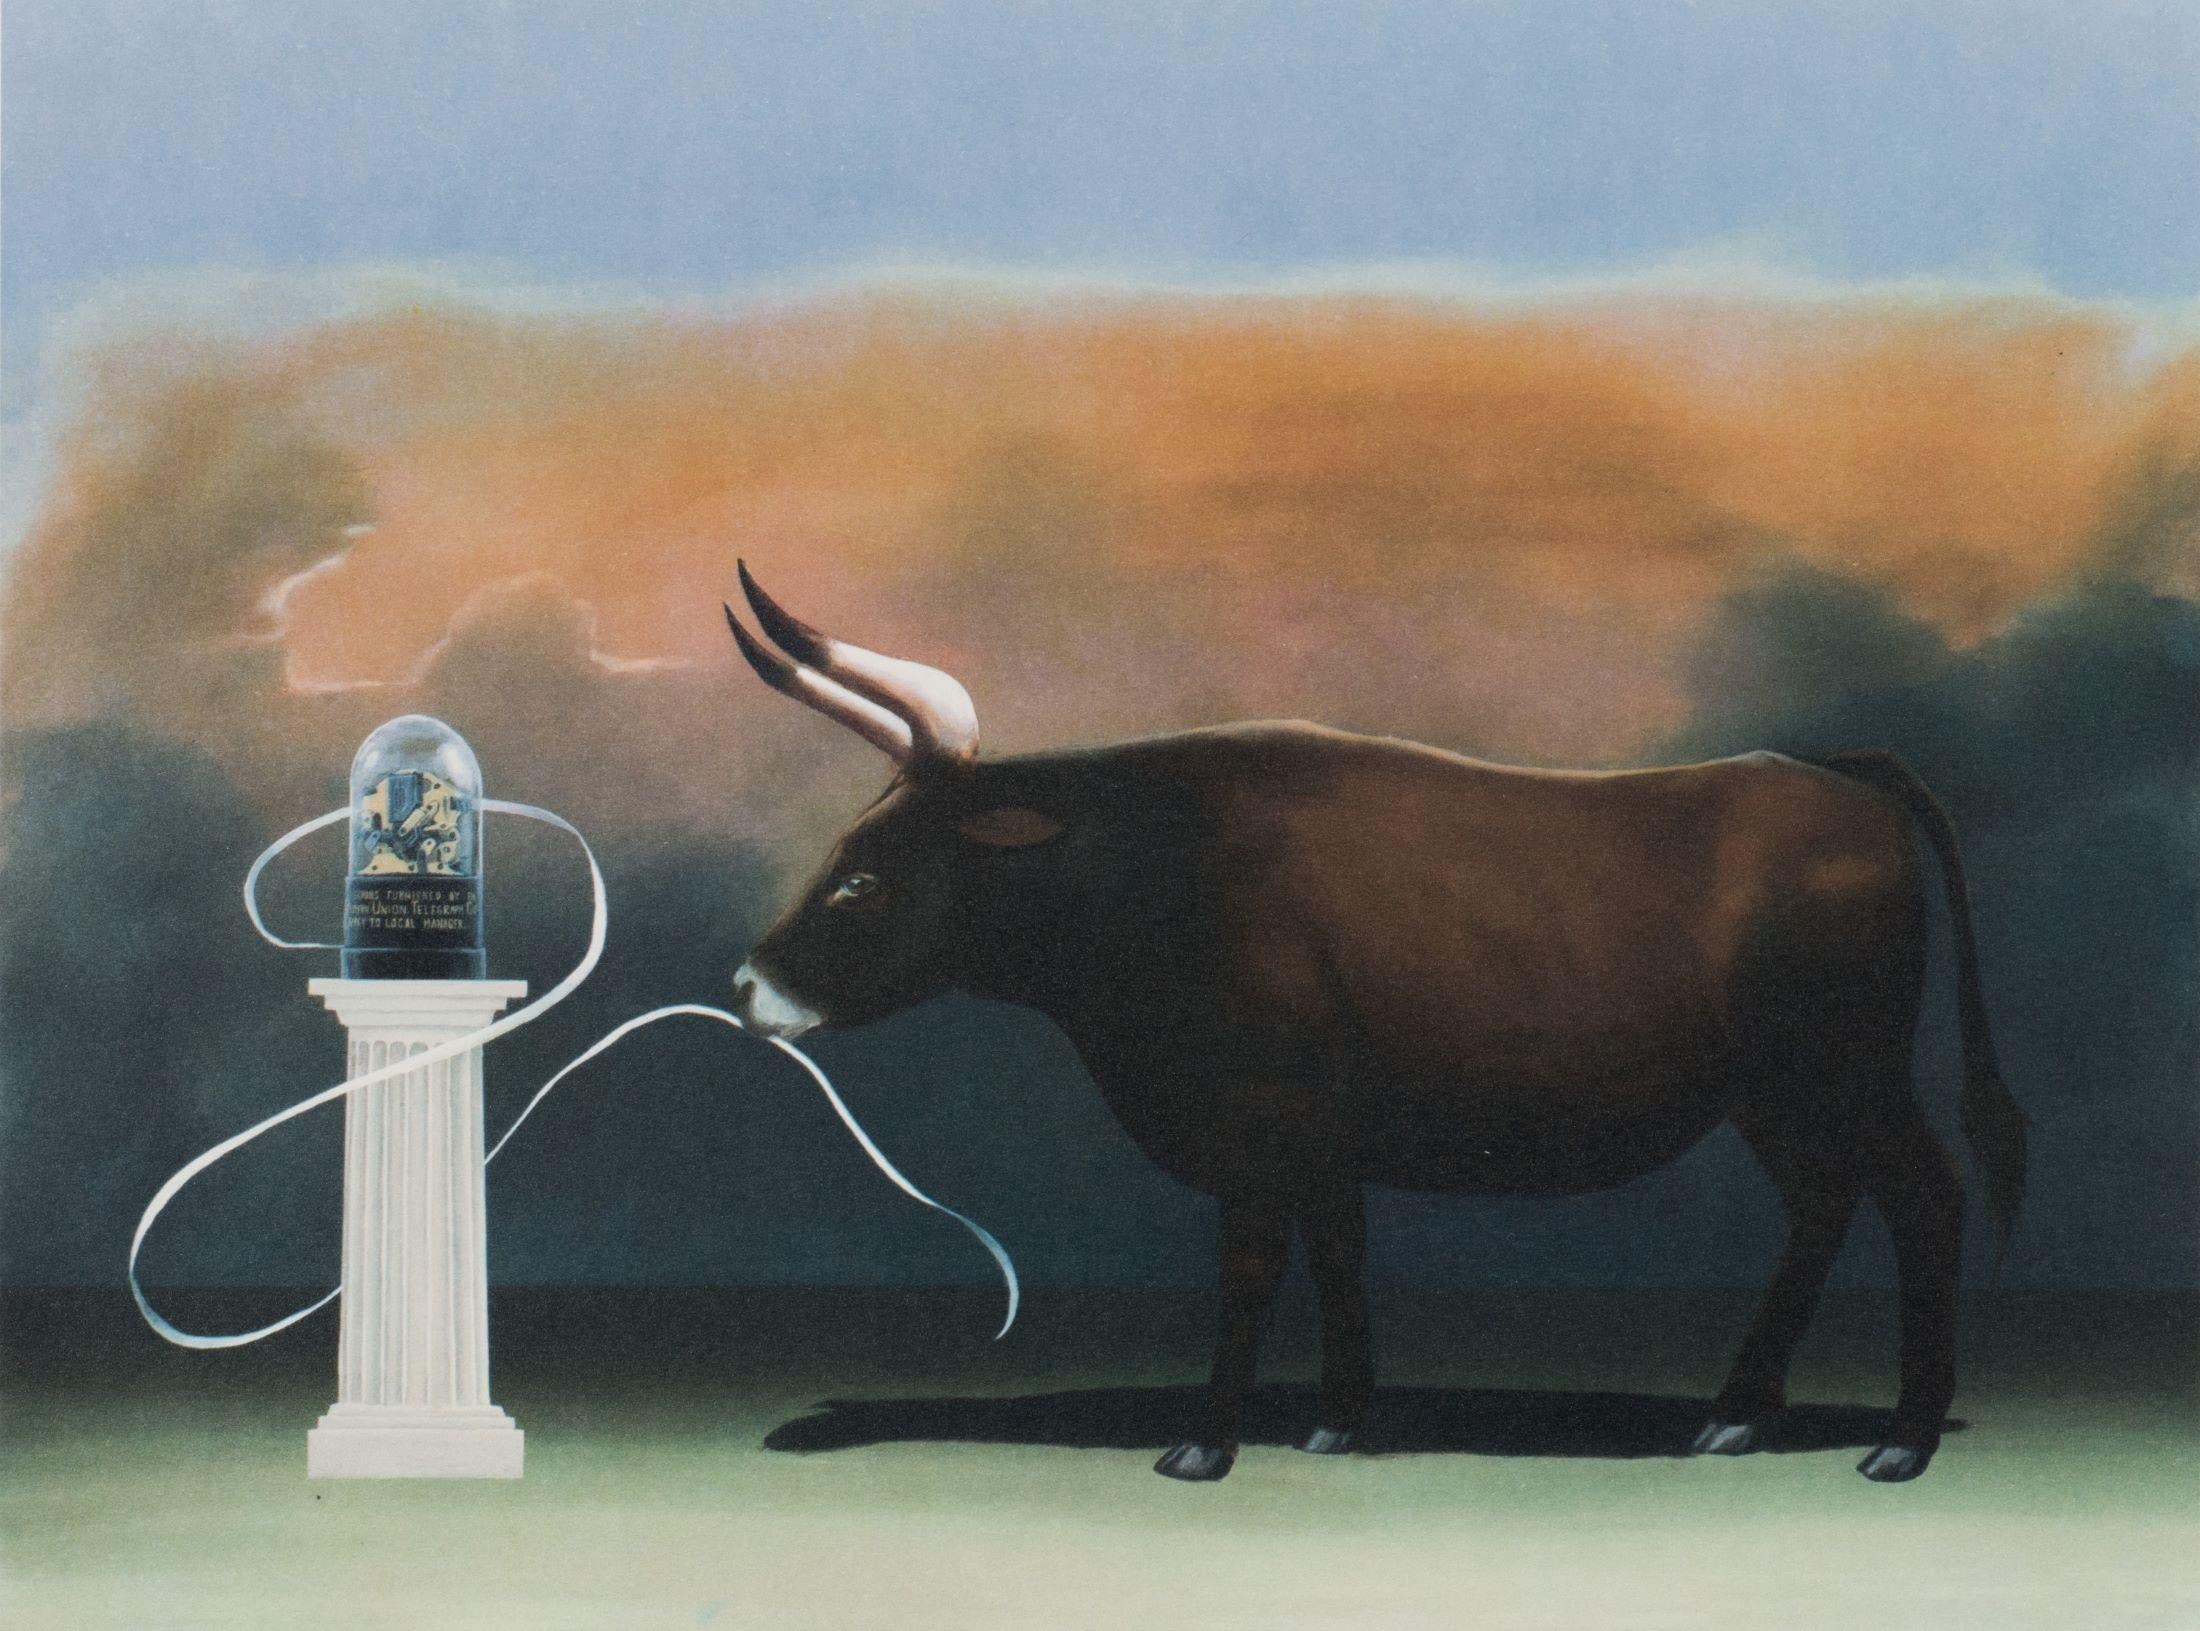 Bull Market IV (Ticker Tape) - Contemporary Print by Robert Deyber 